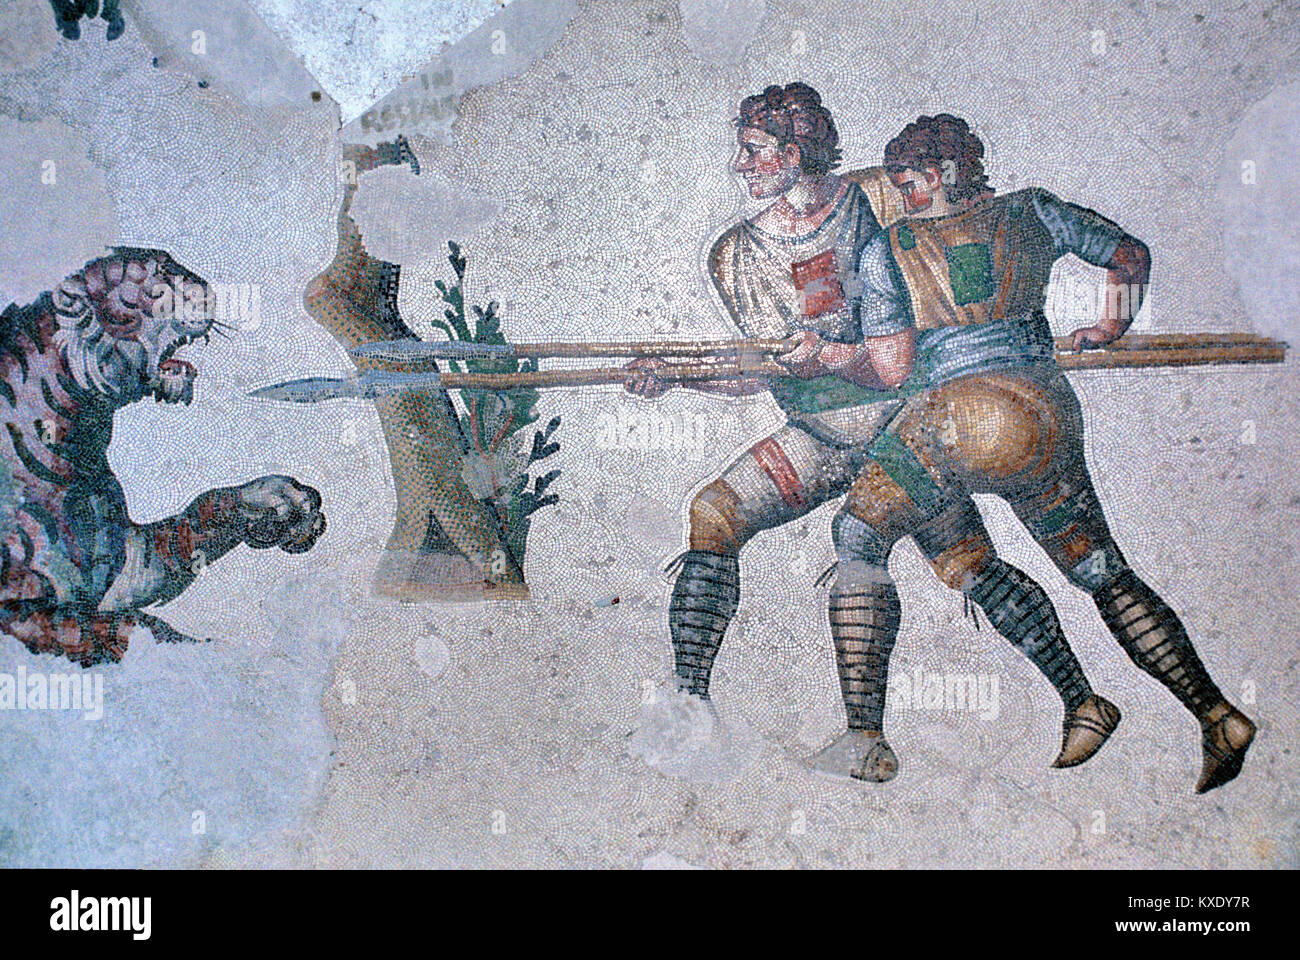 Pavimento bizantino mosaico bizantino di cacciatori con lance a caccia di una tigre, dall'ex bizantina Palazzo Grande c5th, Bisanzio, Istanbul, Turchia Foto Stock